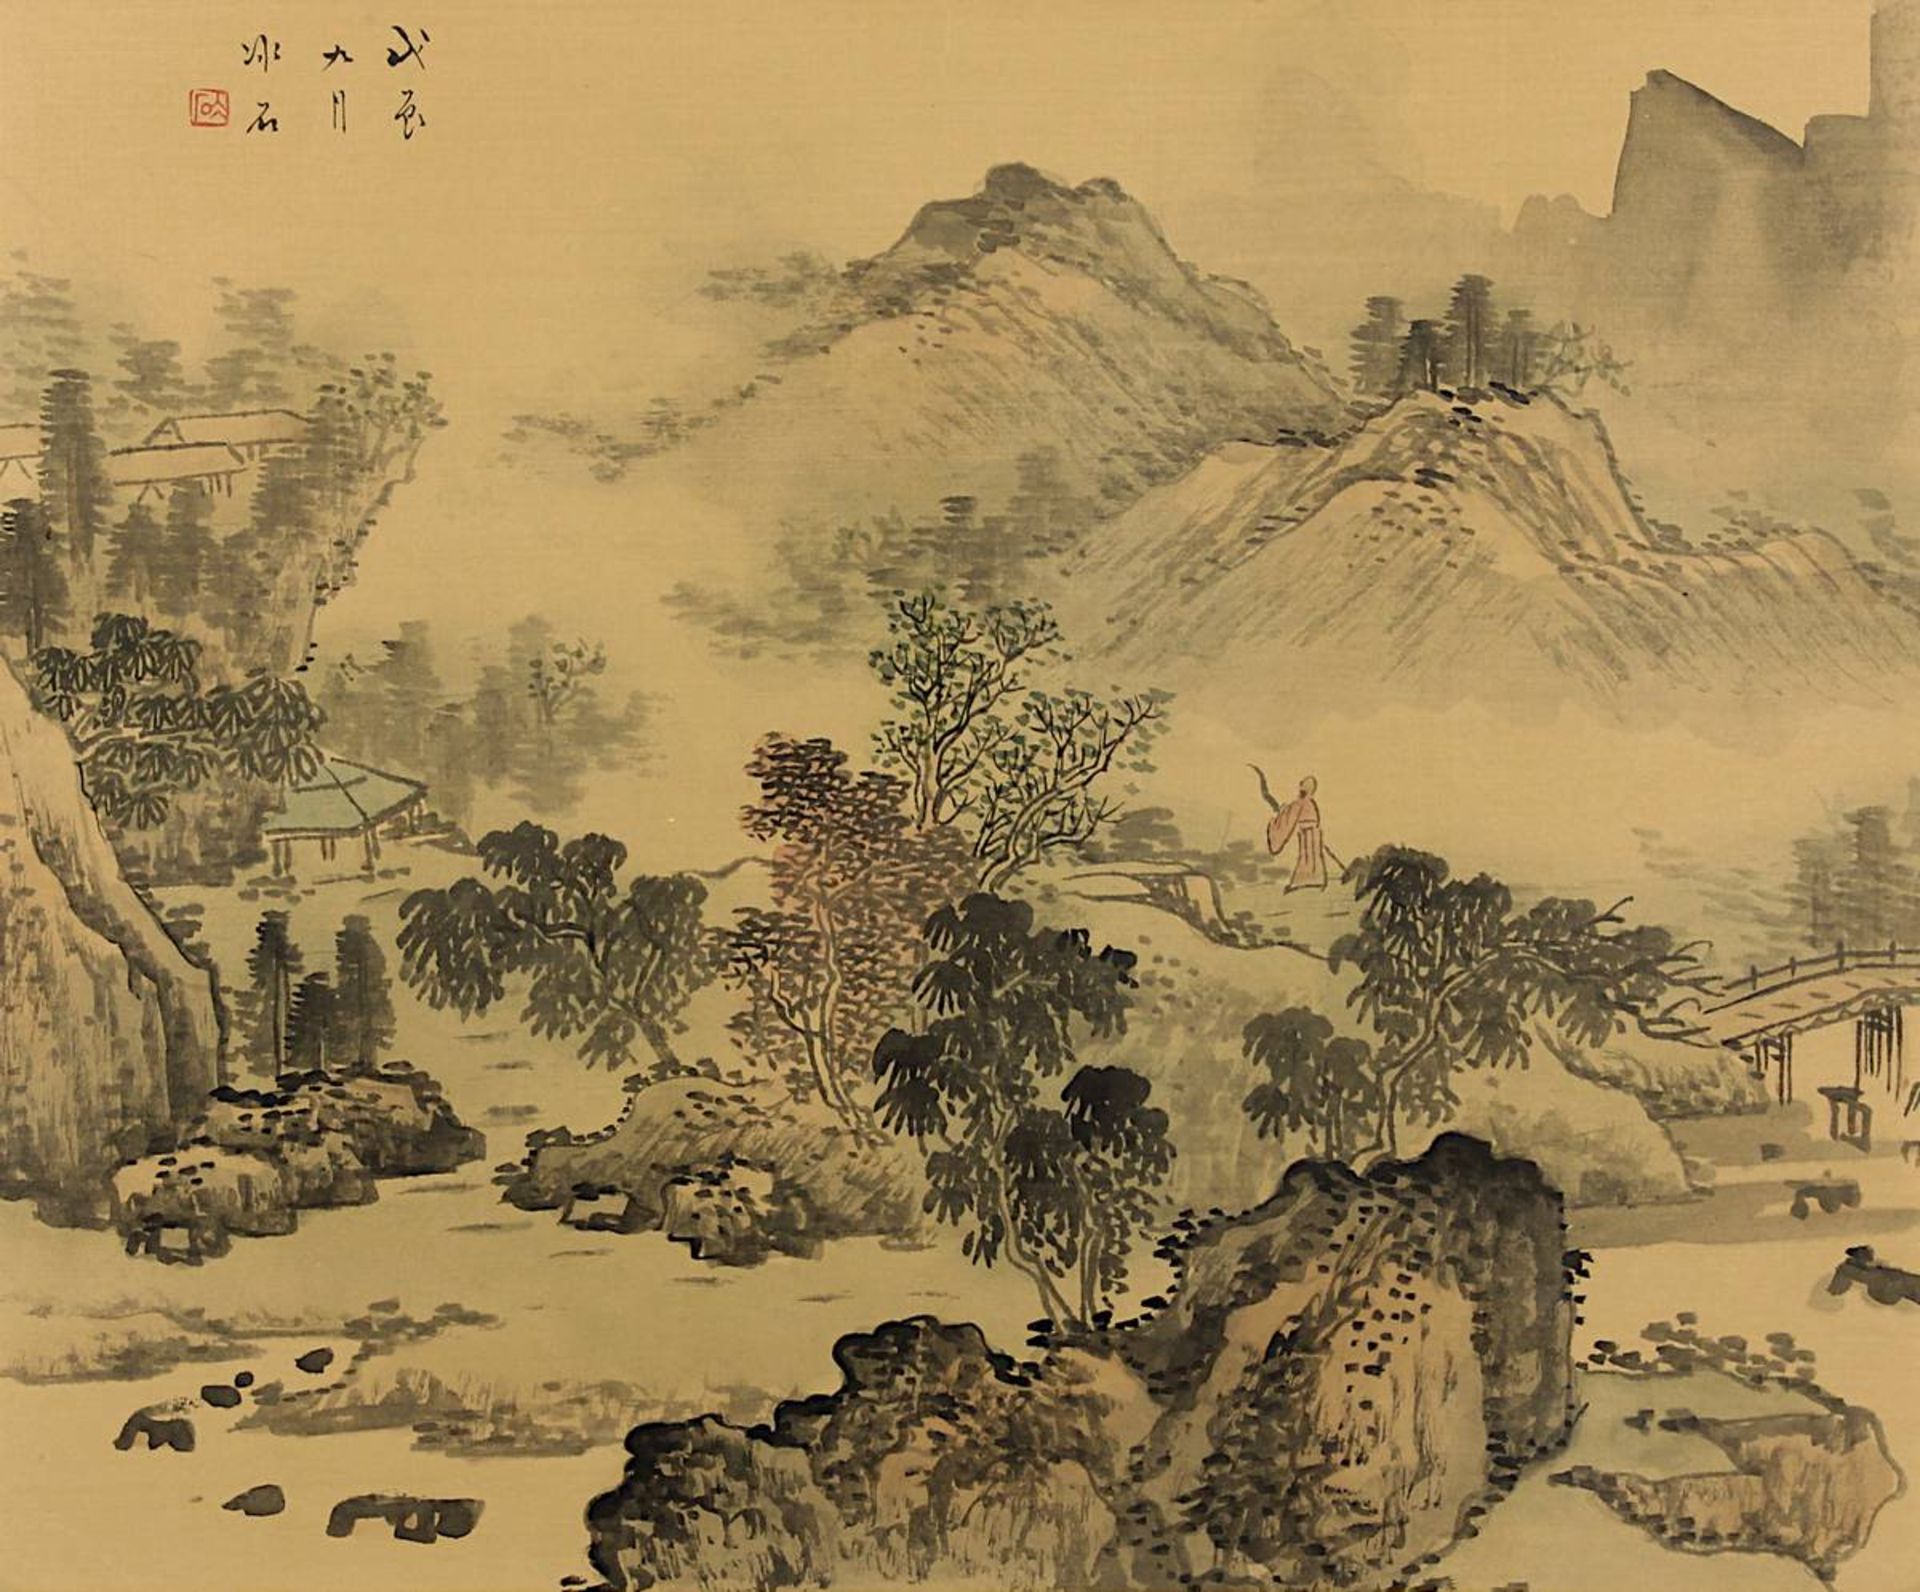 Chinesisches Landschaftsaquarell auf Seide, 19. Jh., in Grautönen und zartem Rot auf beigen Seidengr - Bild 2 aus 2